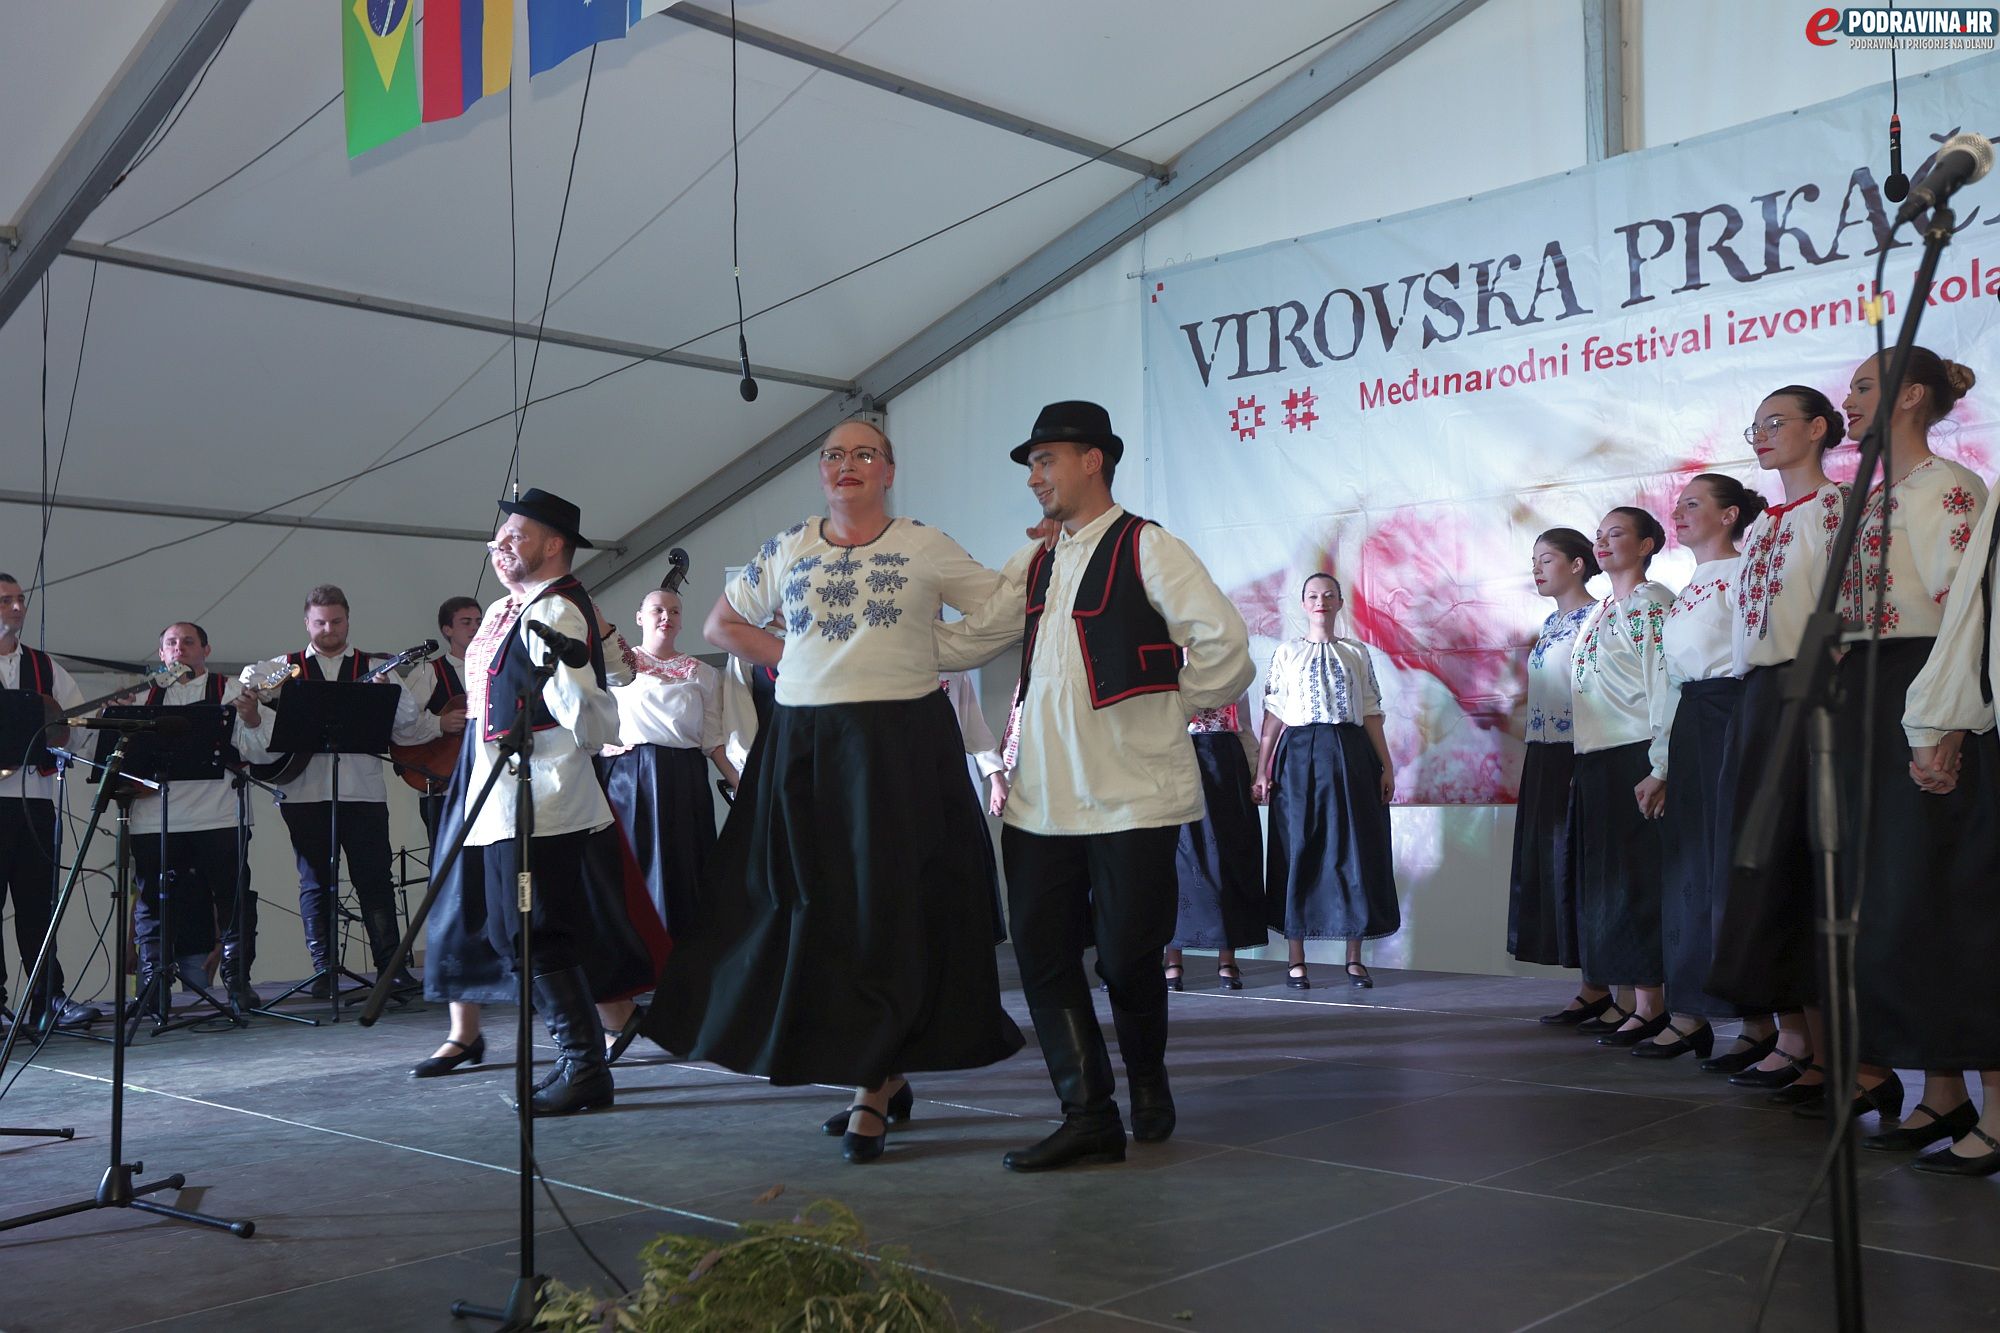 Virovska prkačijada folklor